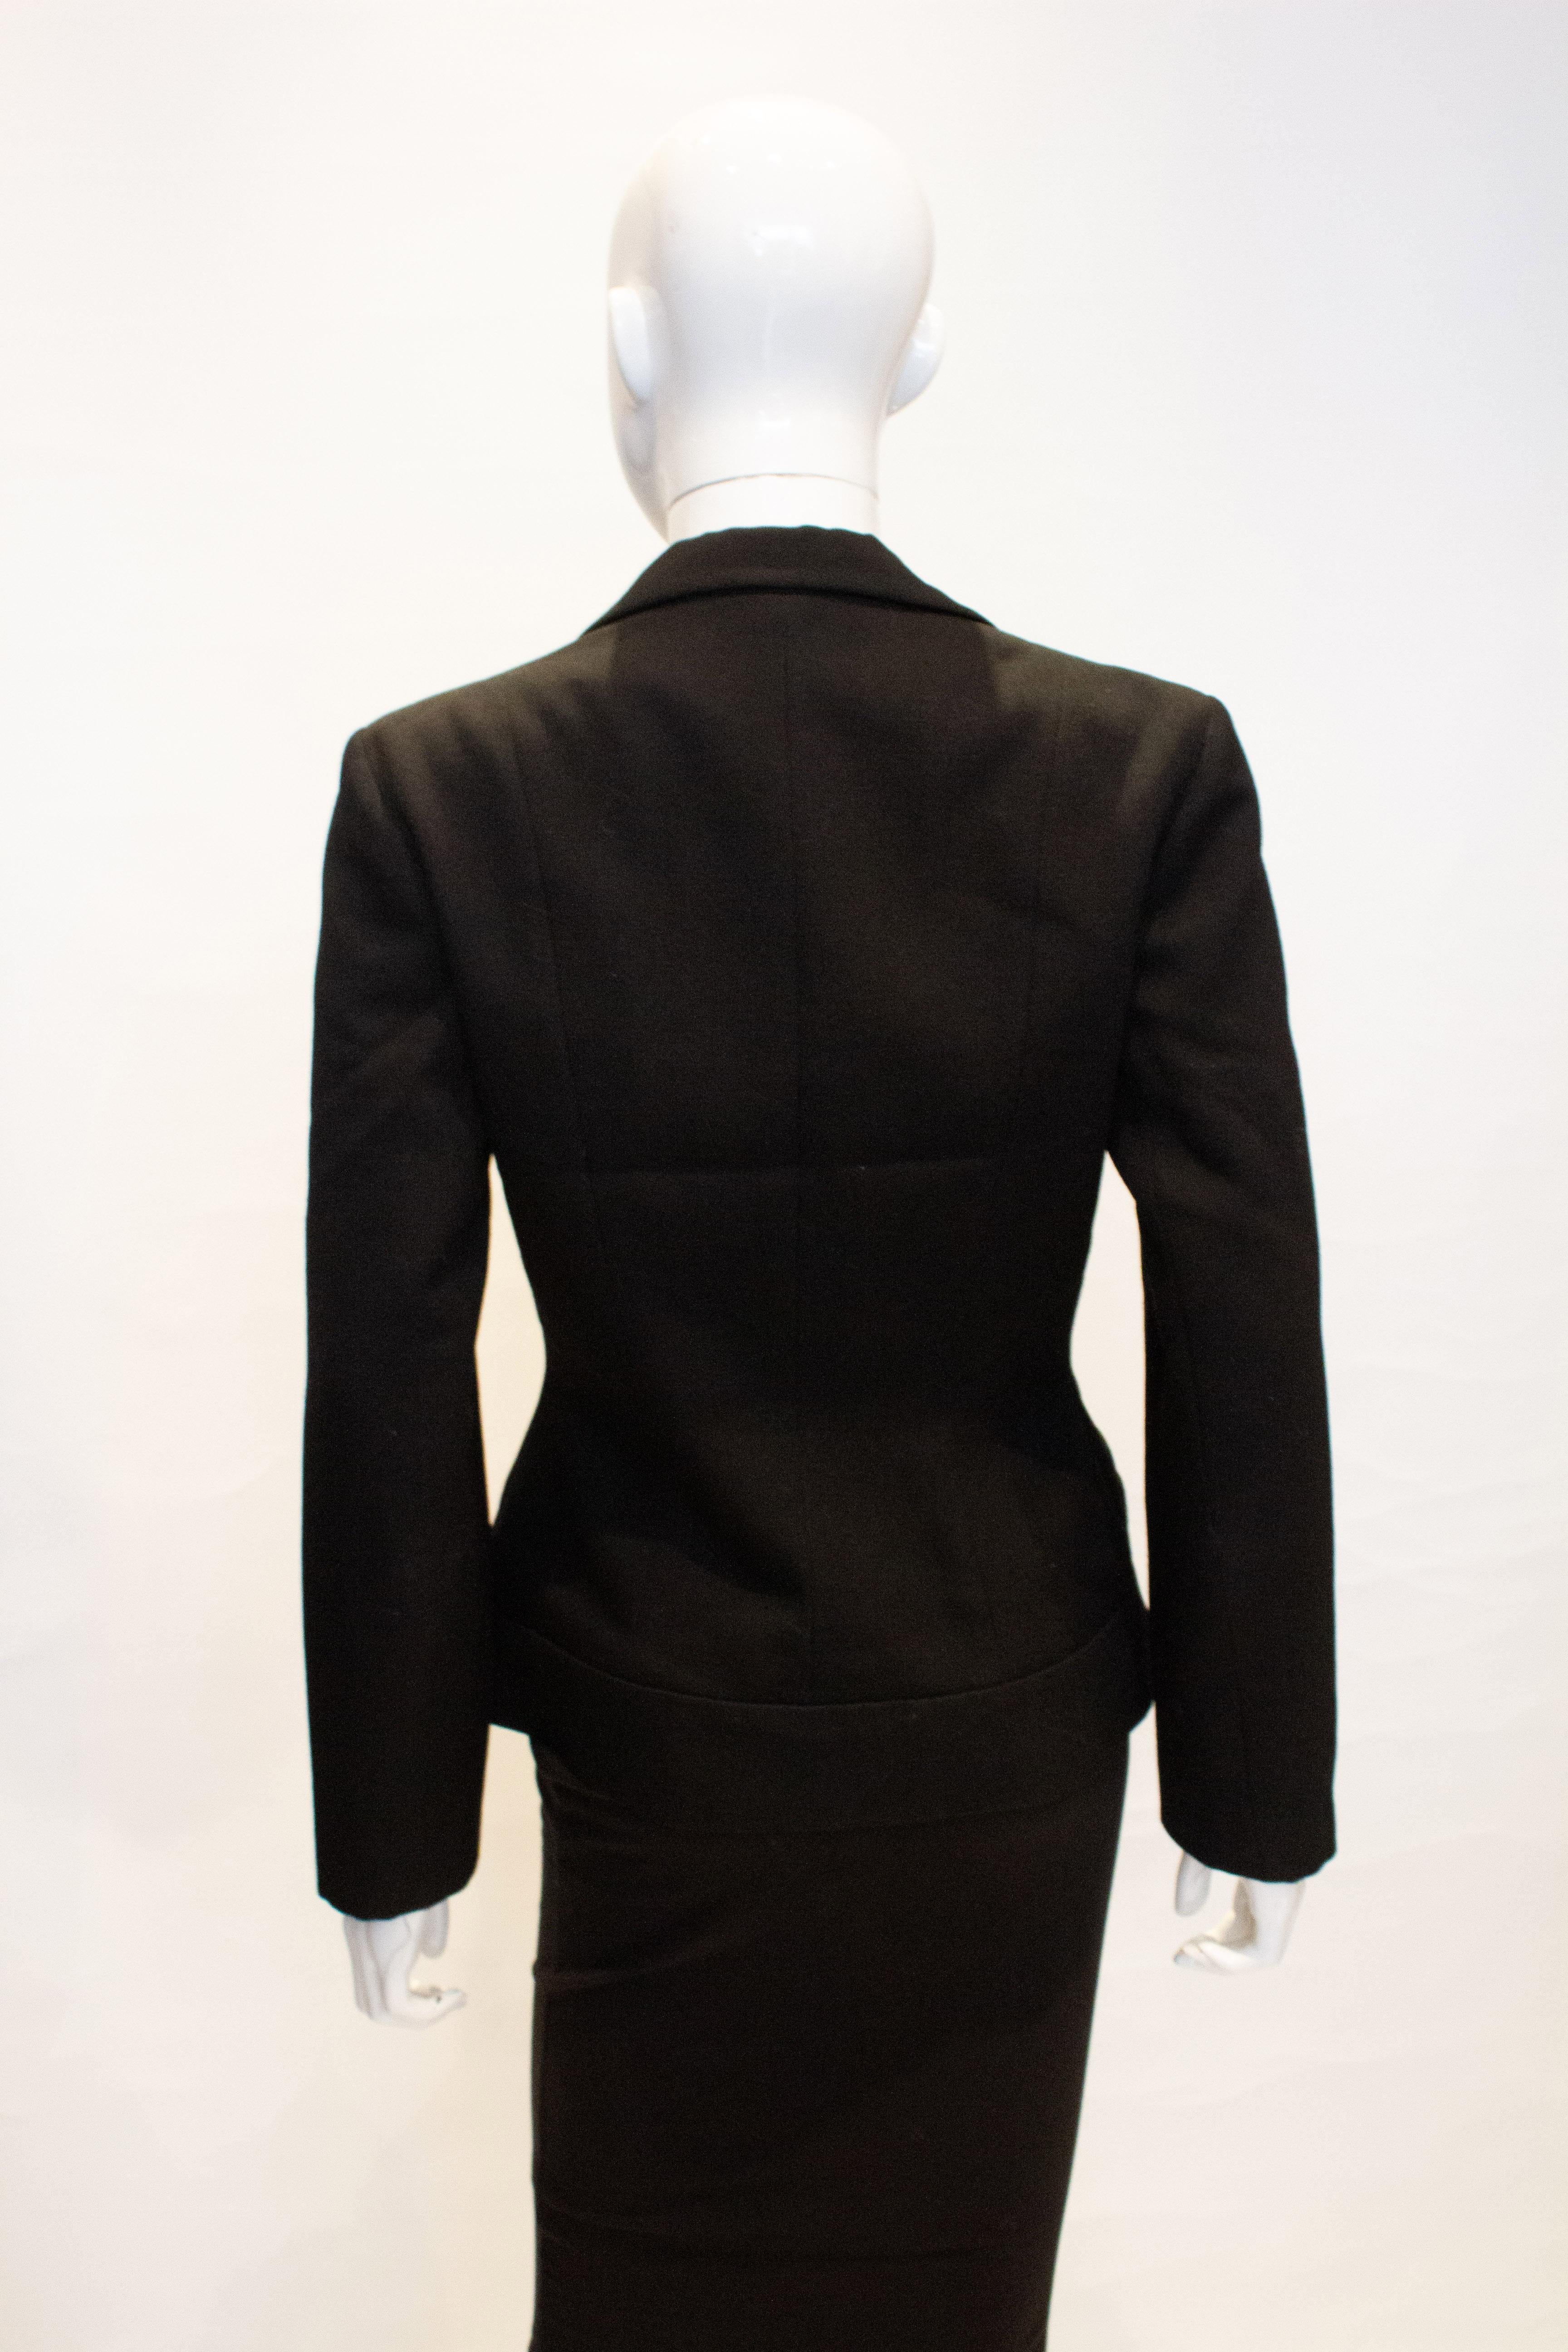 Black Vintage Jacket by Just Gordon For Sale